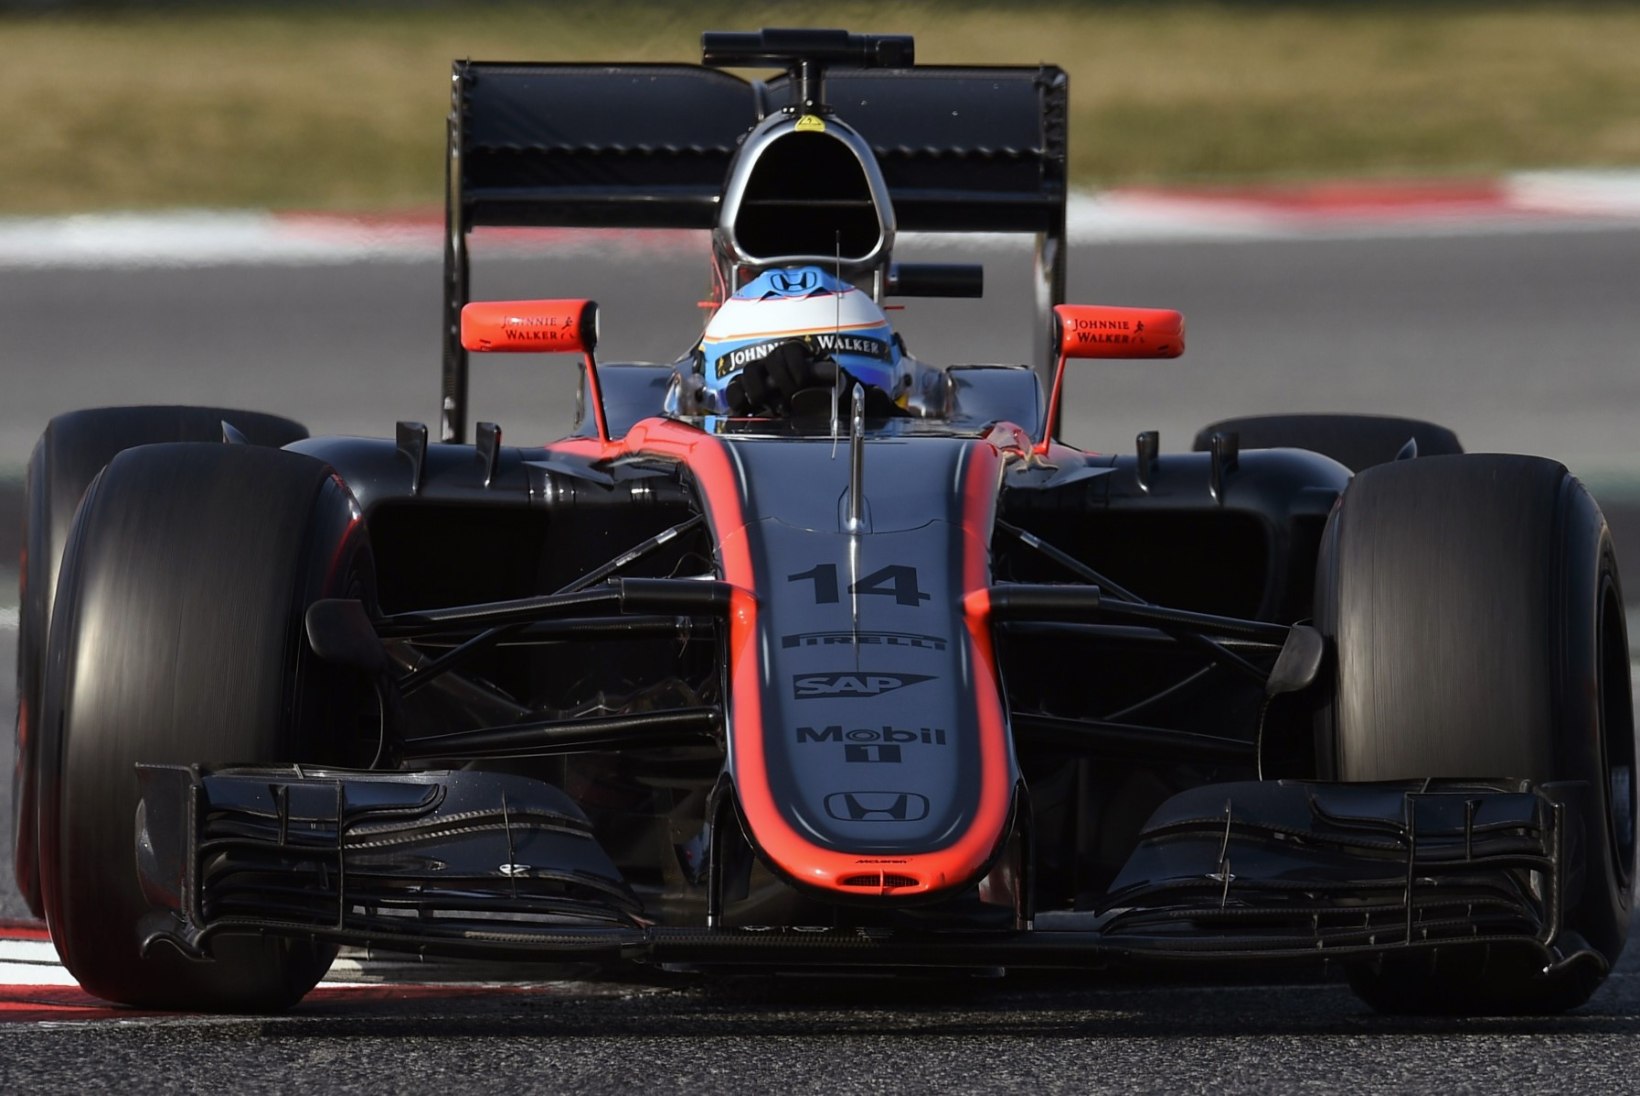 GALERII: Räikkönen pidi Barcelona teisel testipäeval tunnistama Ricciardo ülinappi paremust